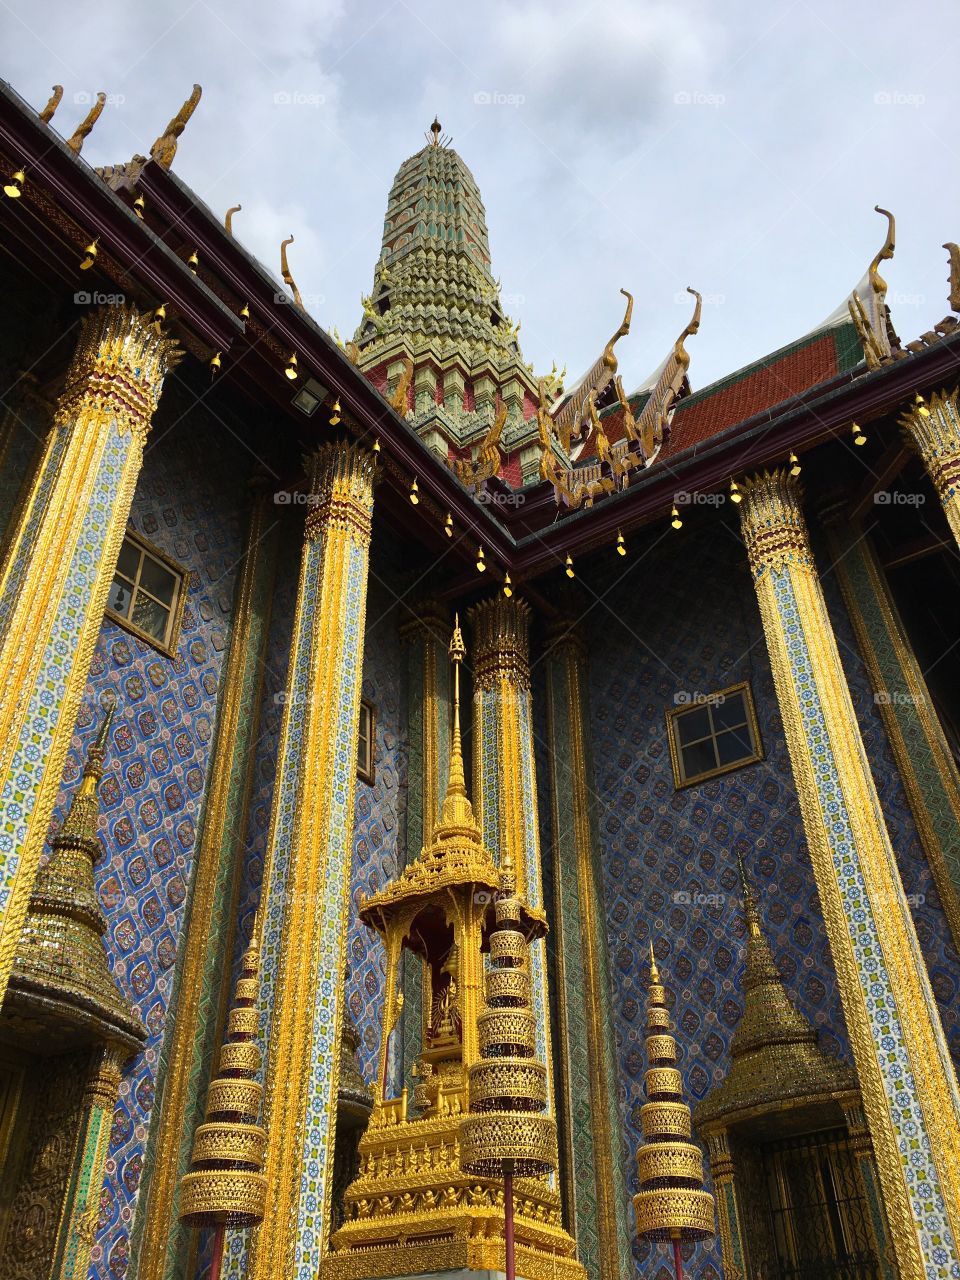 Grand Palace / Bangkok Thailand 32